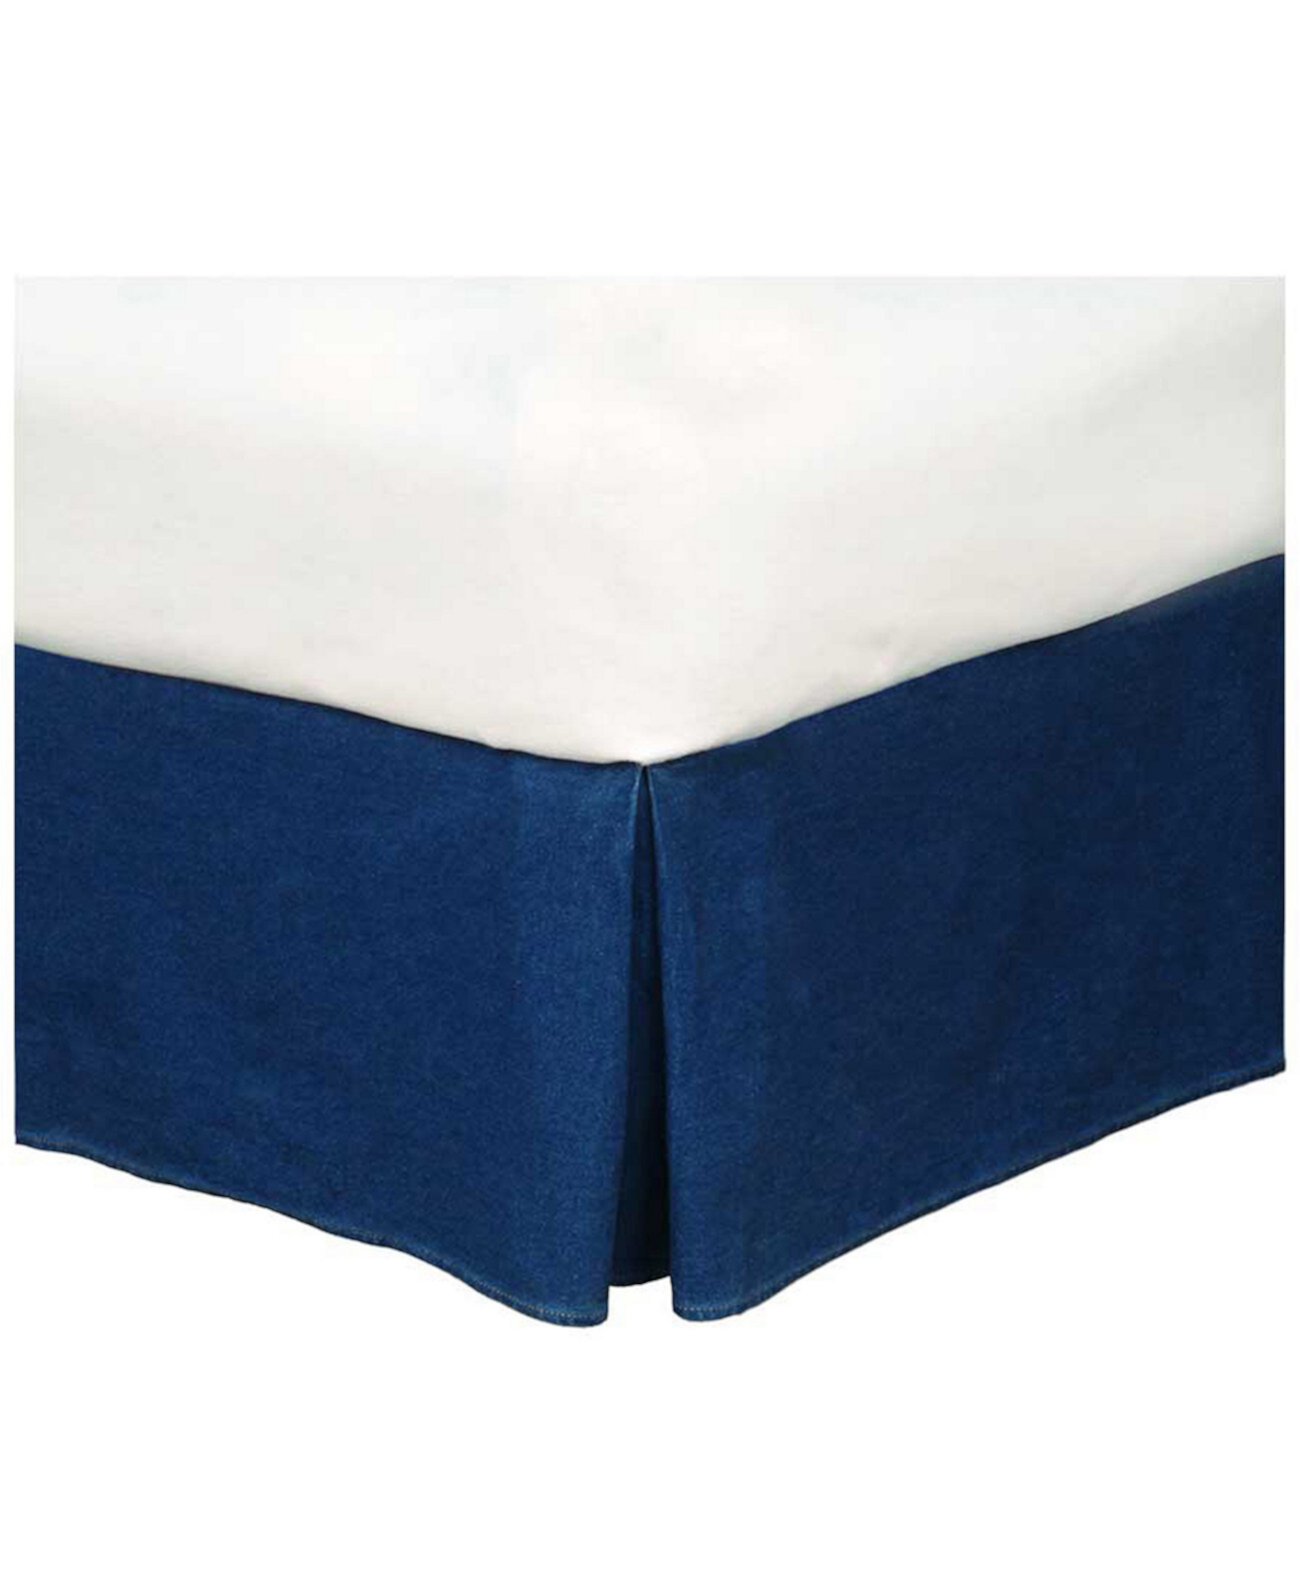 Джинсовая юбка с двумя односпальными кроватями в американском стиле Karin Maki